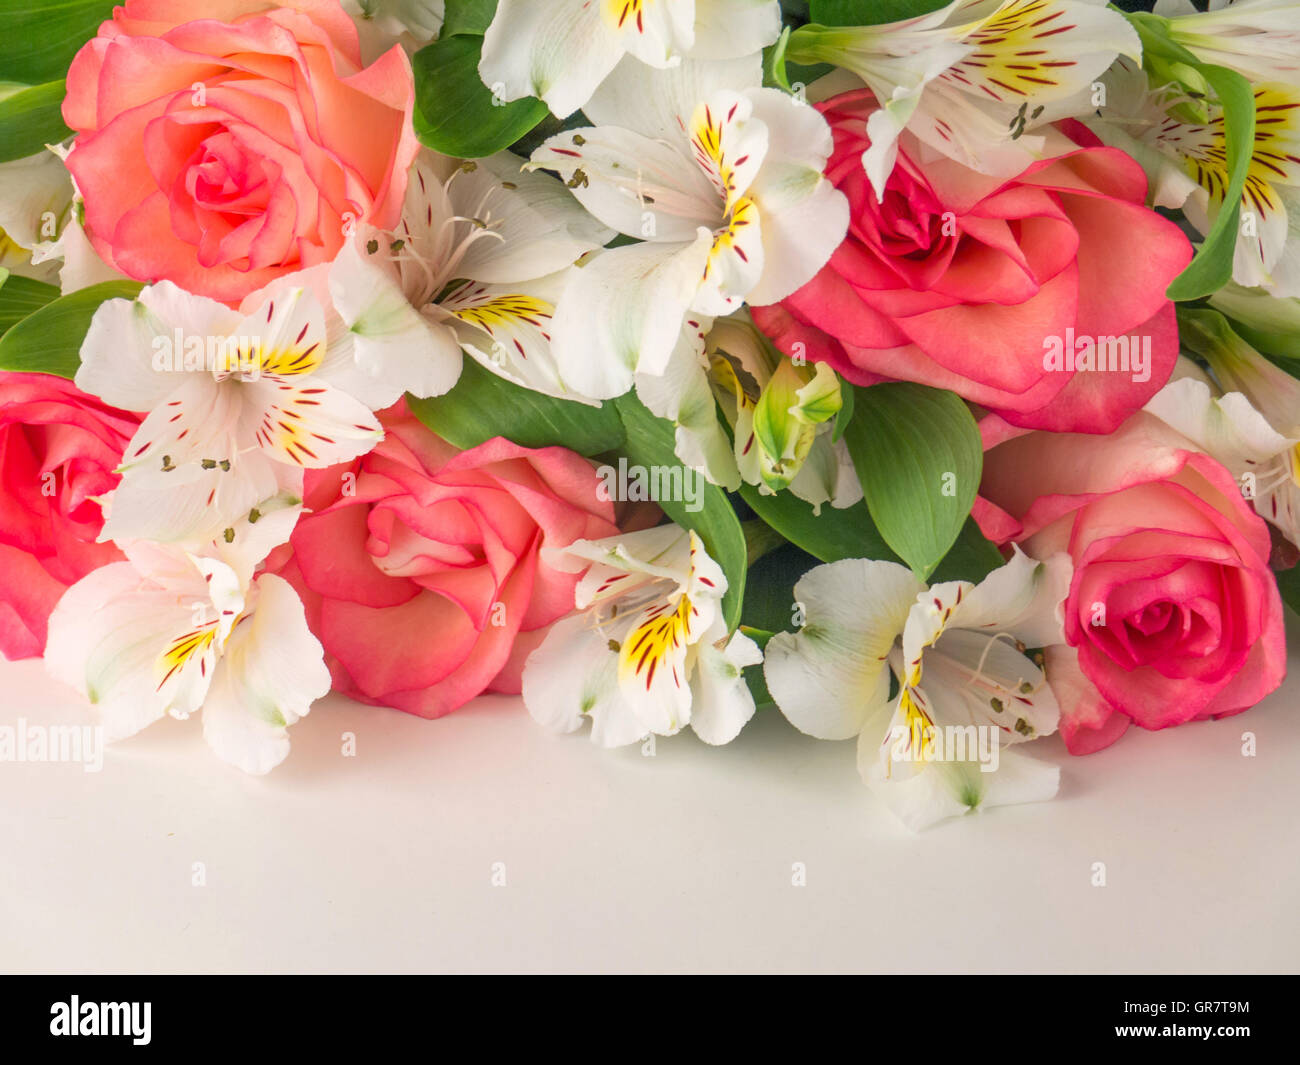 Rose di salmone e bianco delicato bouquet alstroemeria Foto Stock